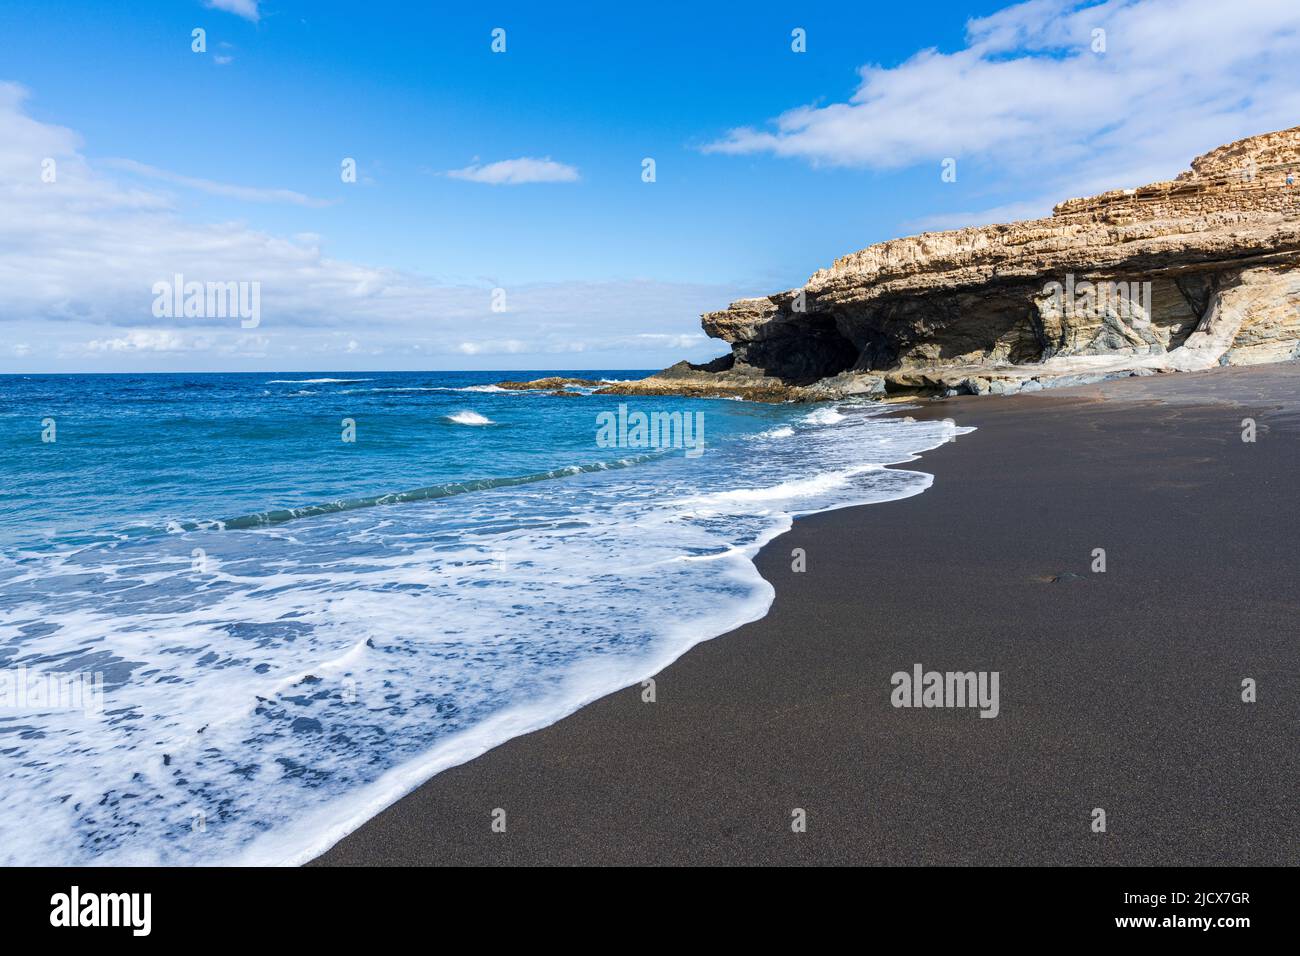 Onde che si infrangono sulle scogliere della spiaggia vulcanica di Ajuy, Fuerteventura, Isole Canarie, Spagna, Atlantico, Europa Foto Stock